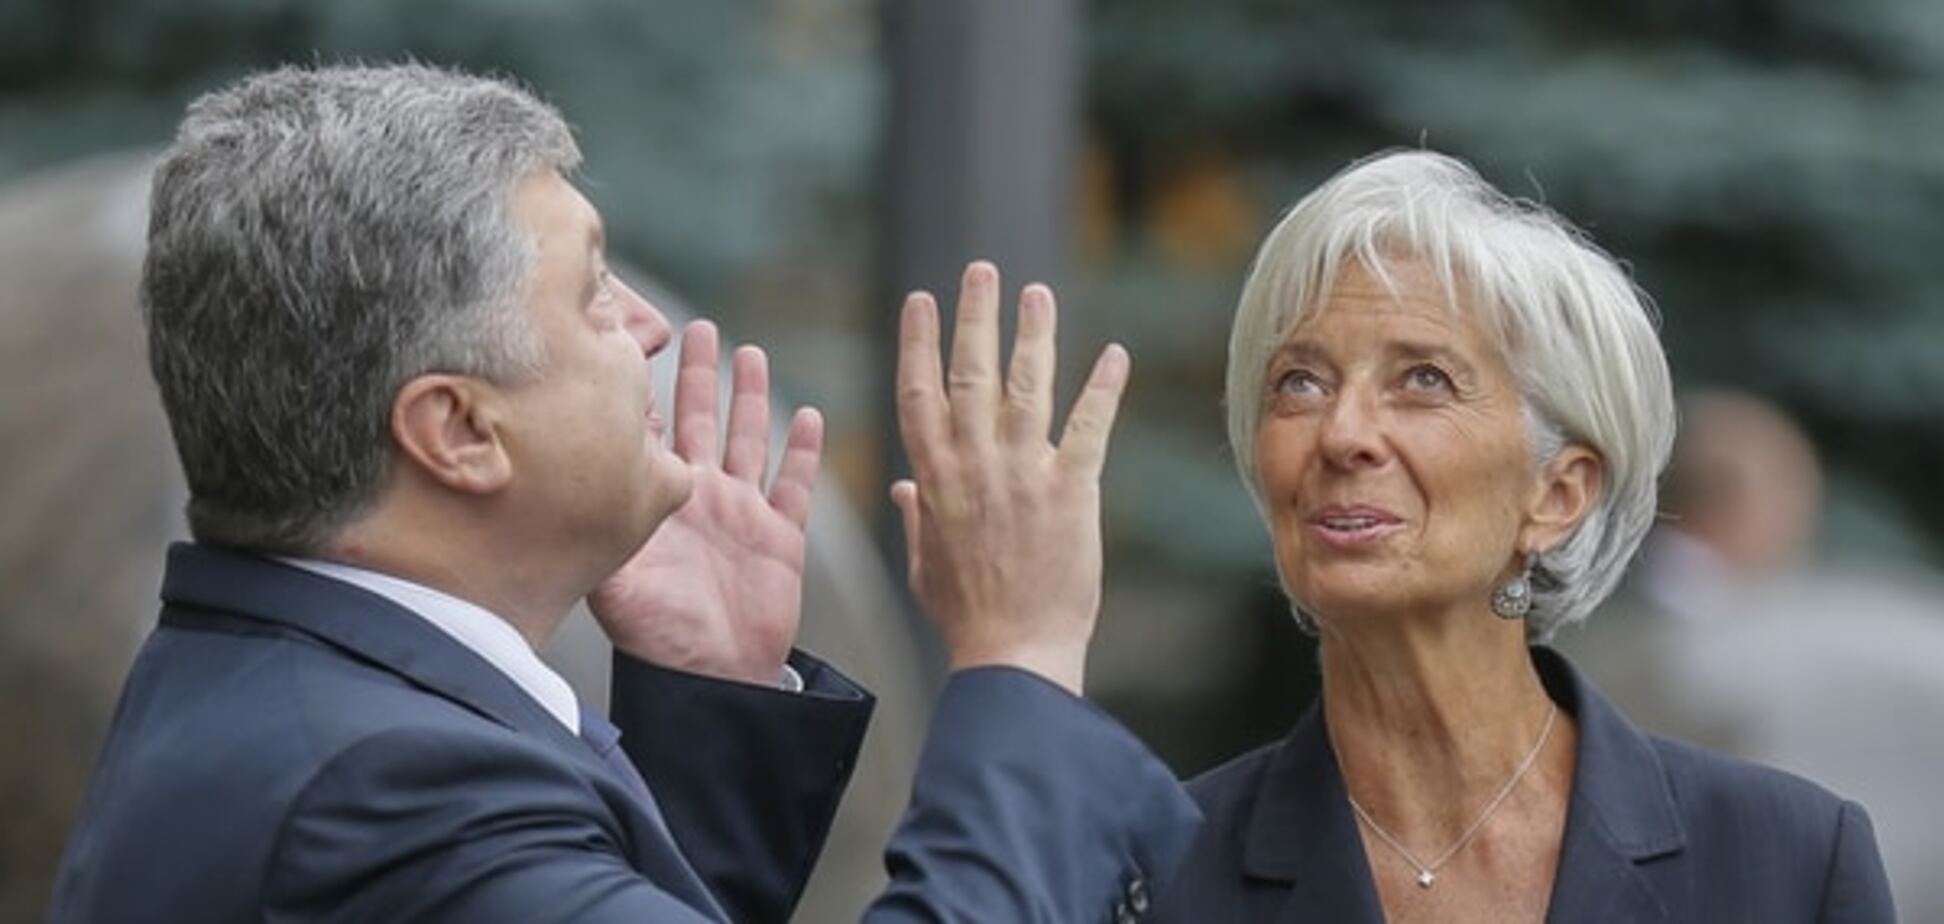 Уникальная страна удивила мир: в МВФ восхищены скоростью реформ в Украине